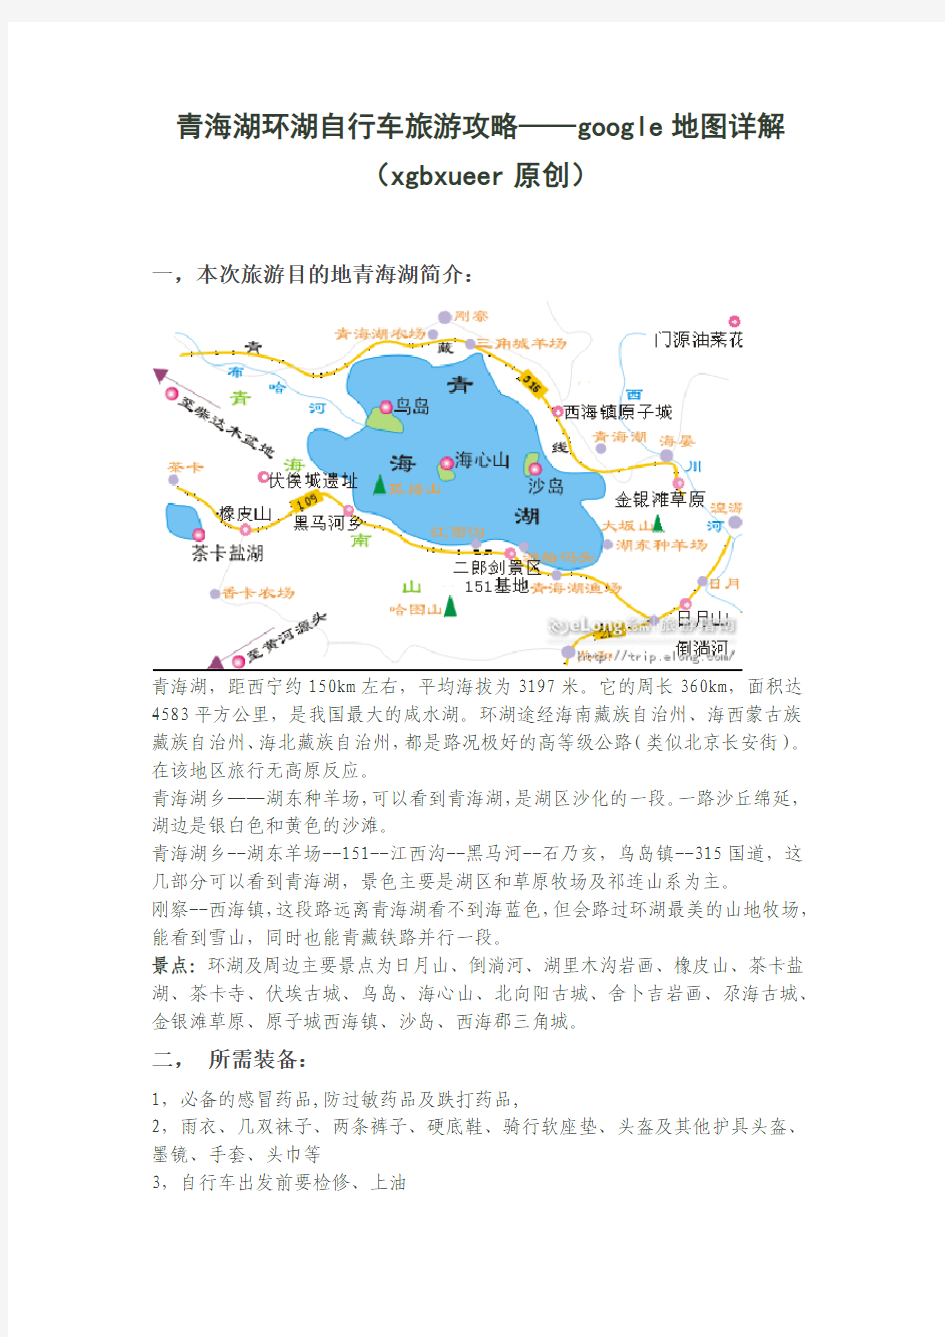 青海湖环湖自行车旅游攻略——google地图详解